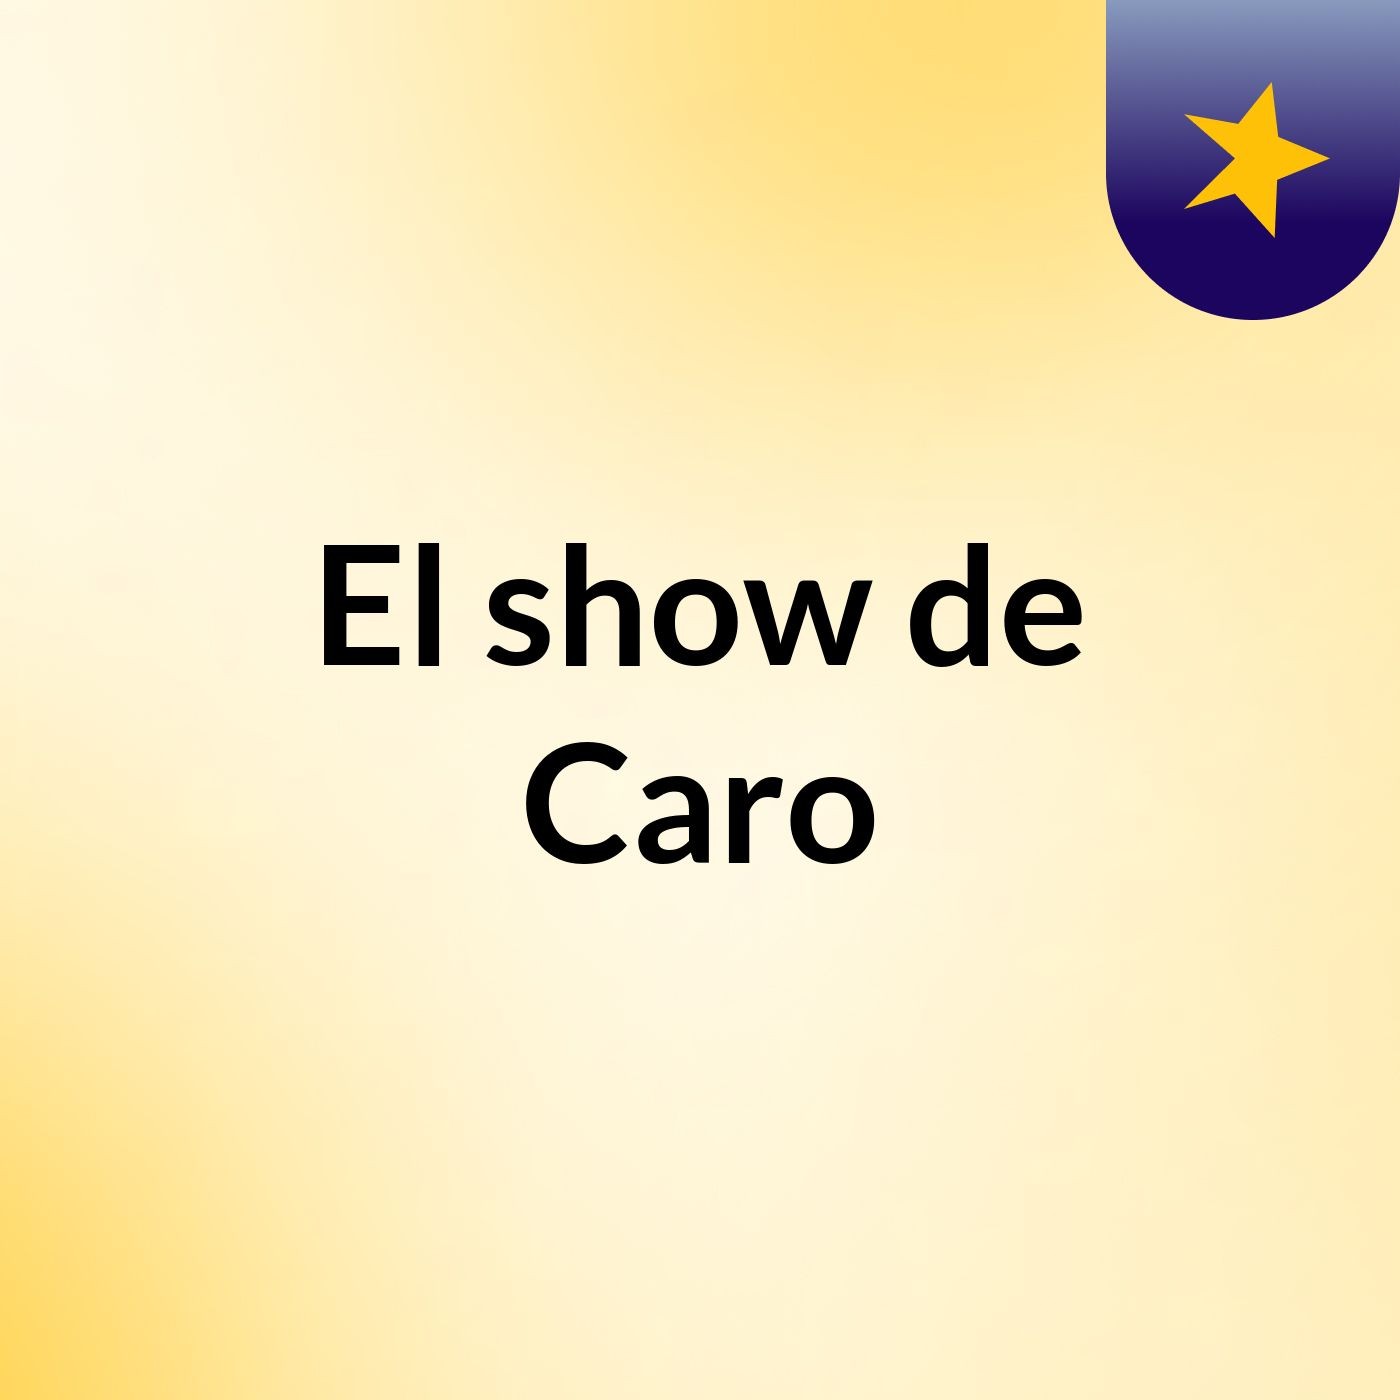 El show de Caro